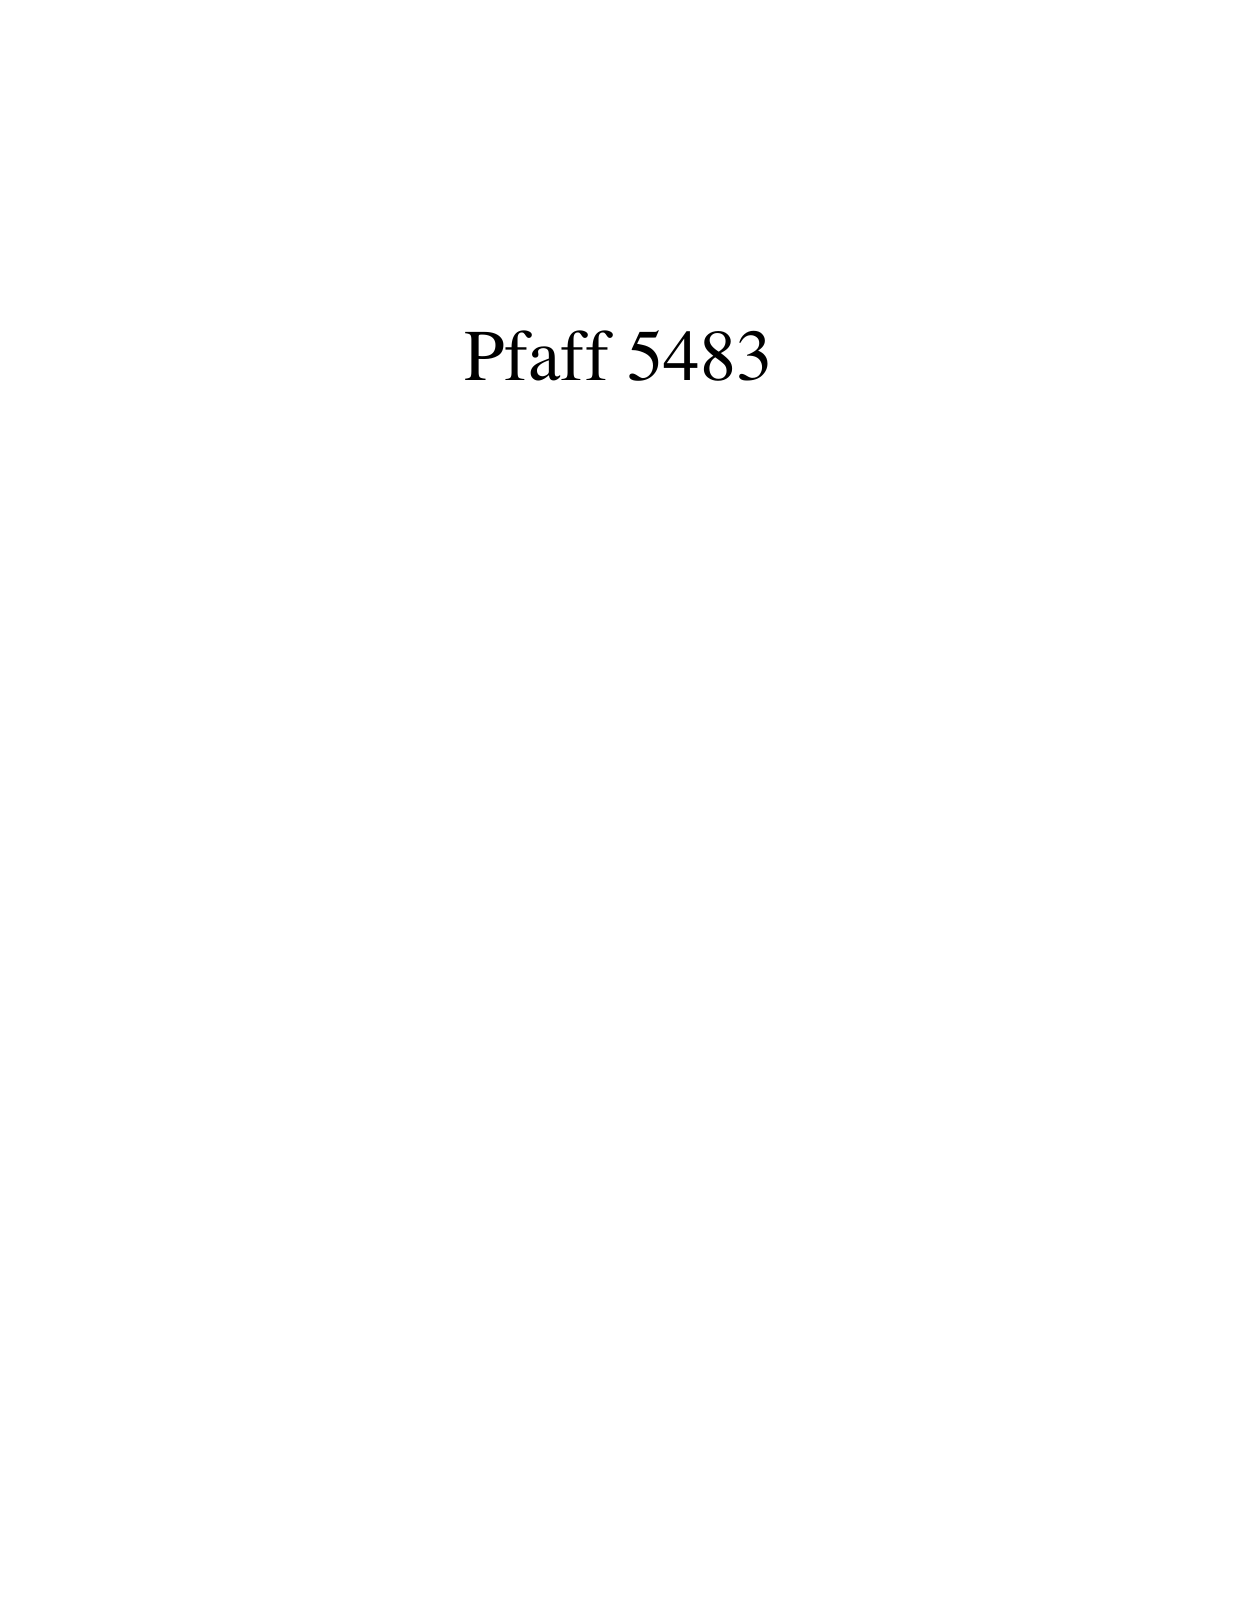 PFAFF 5483 Parts List